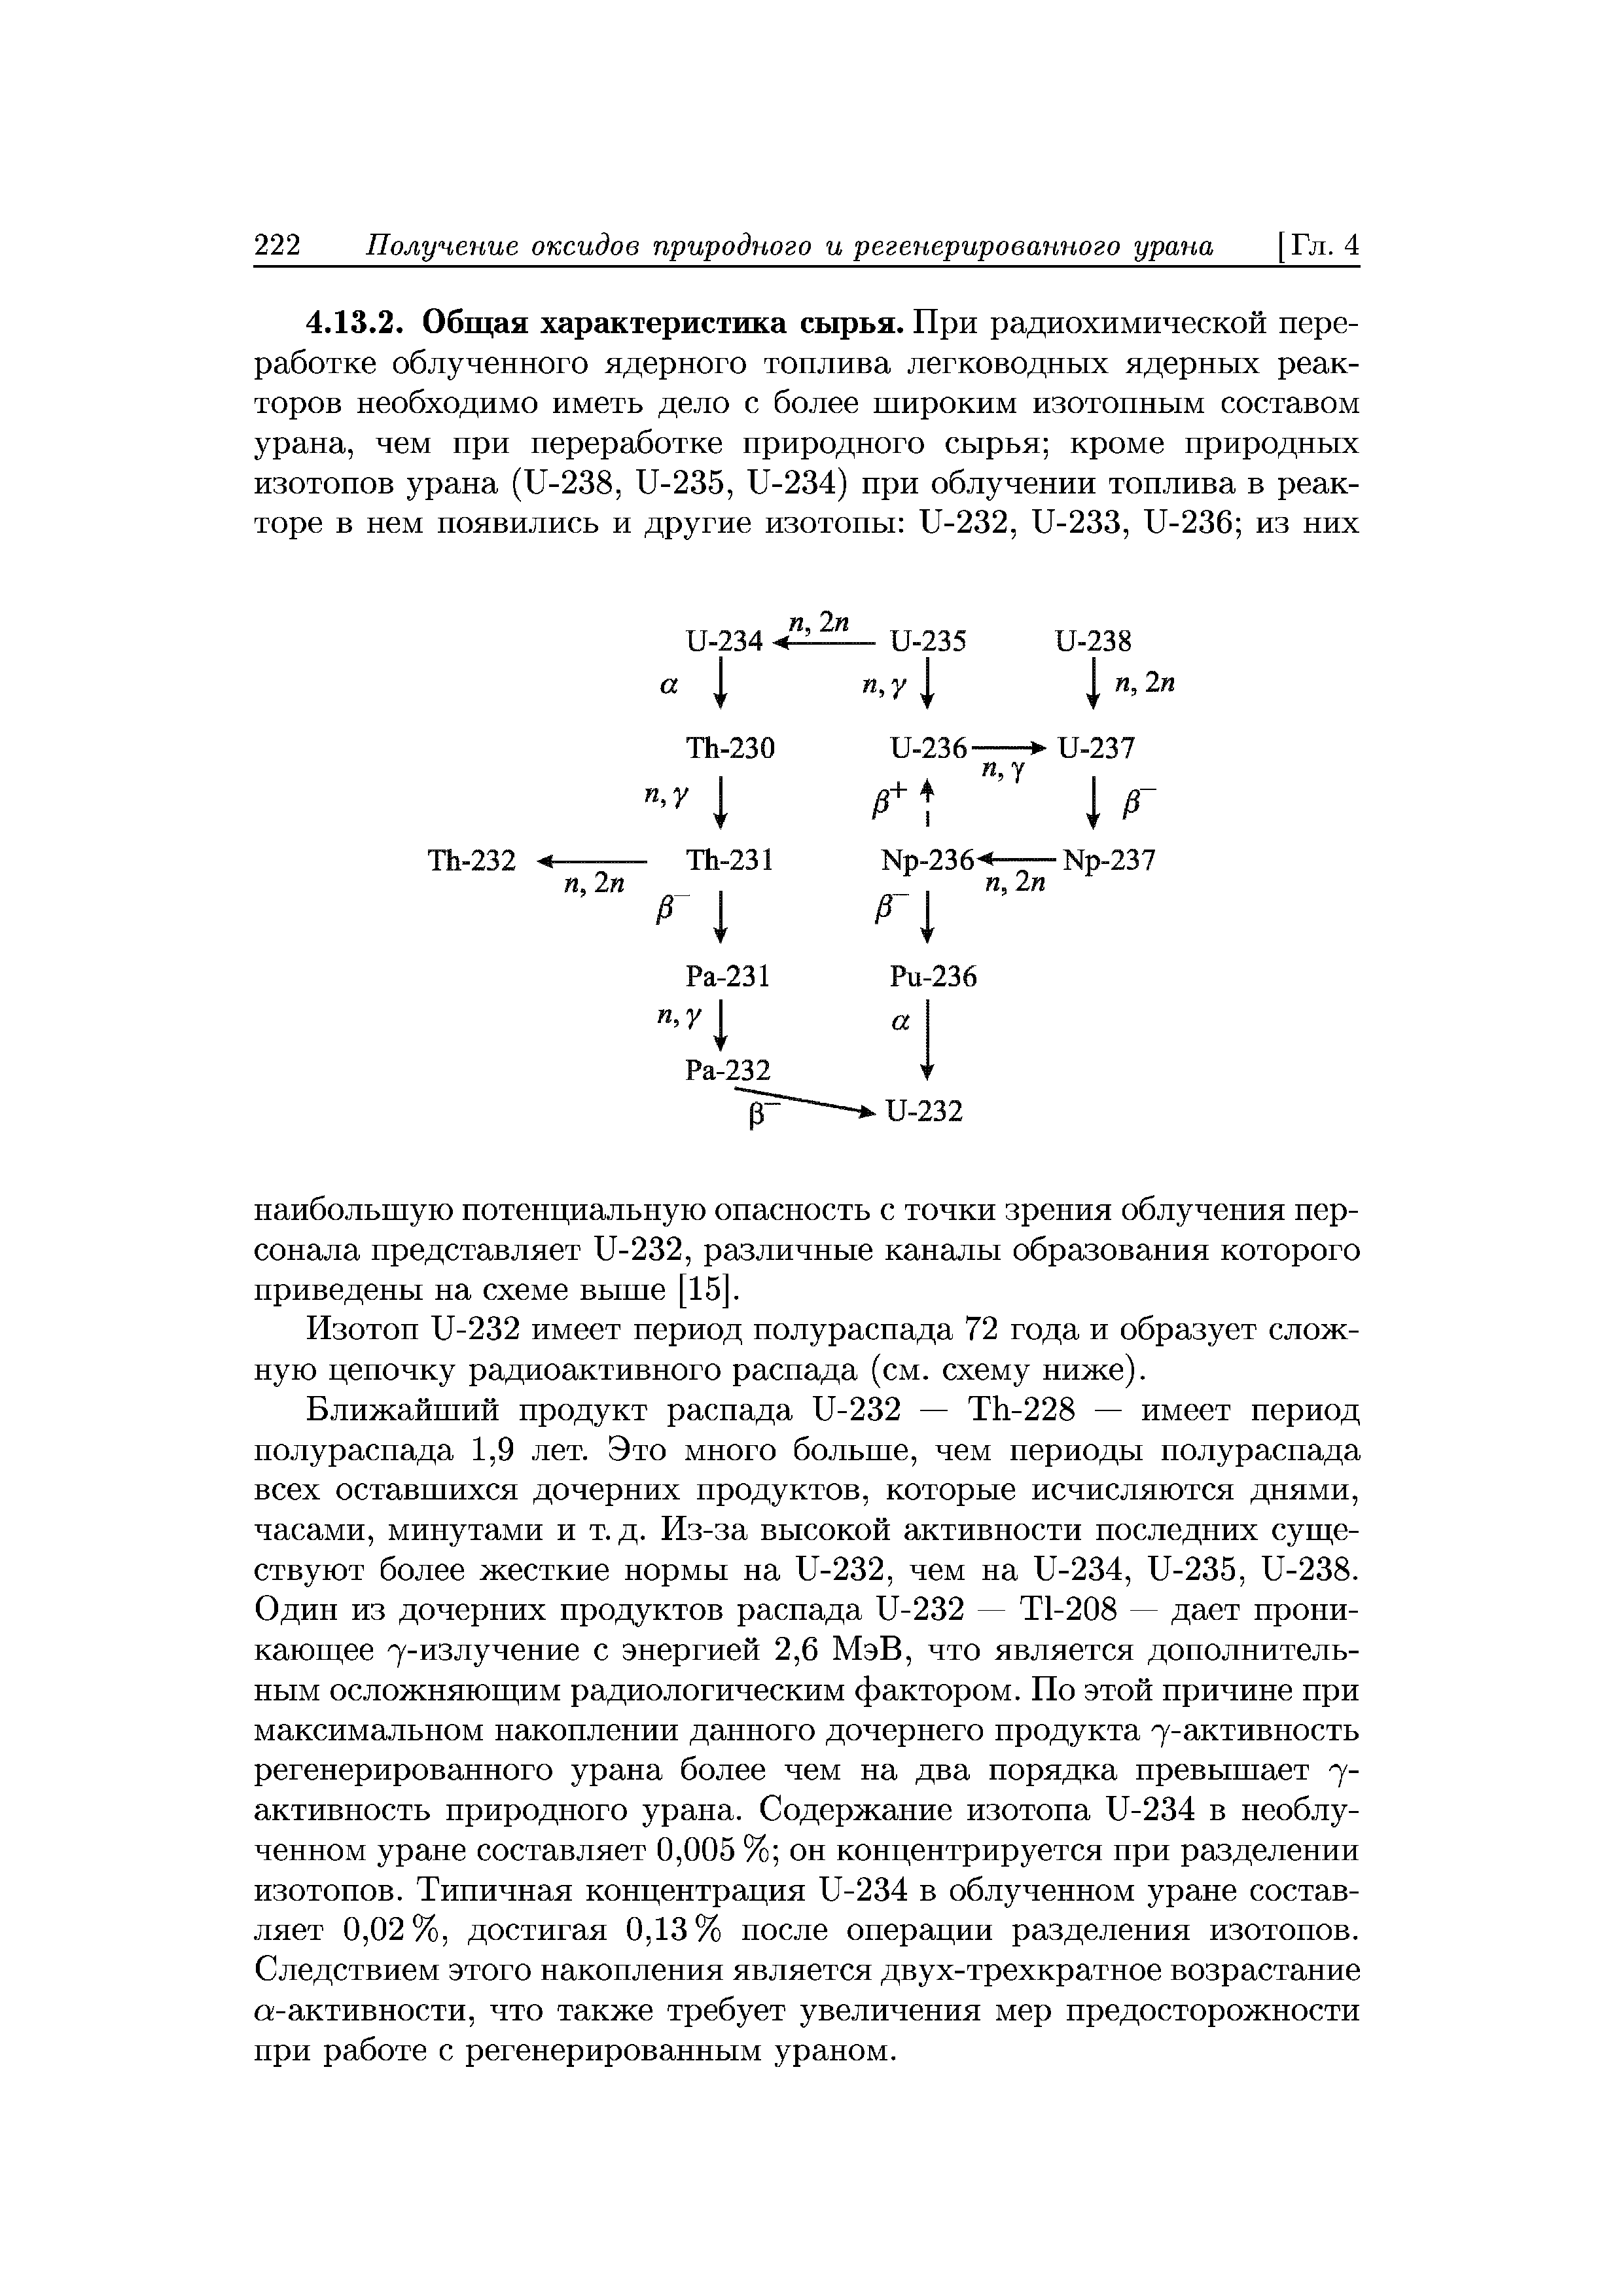 Изотоп U-232 имеет период полураспада 72 года и образует сложную цепочку радиоактивного распада (см. схему ниже).